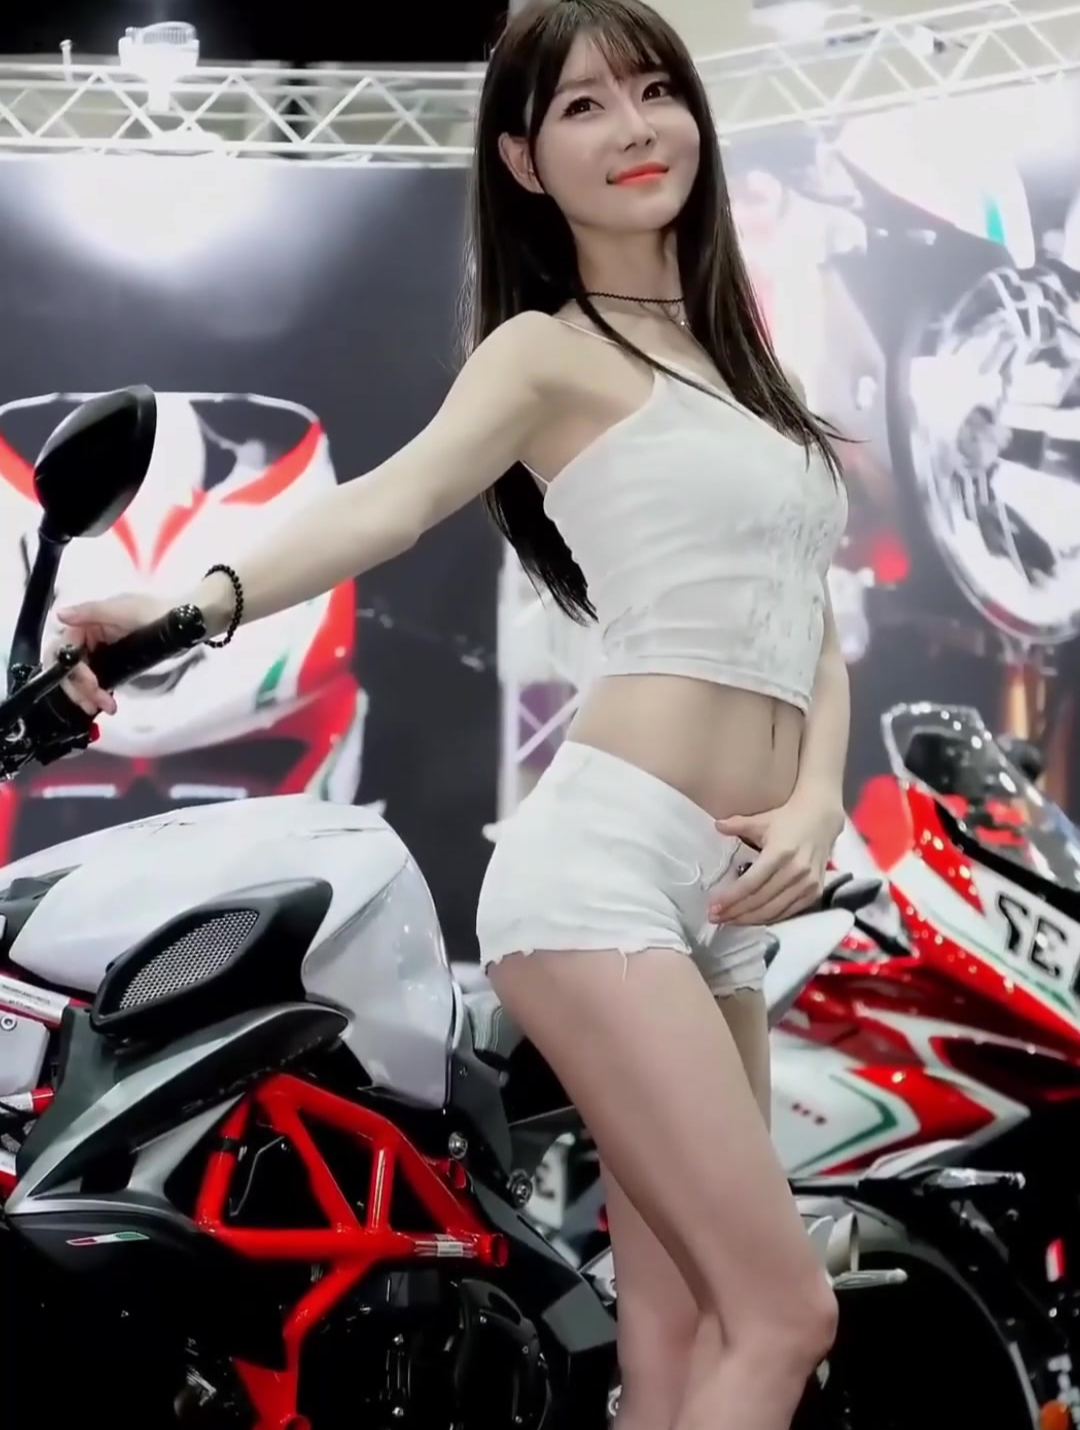 韩国美女崔瑟琪,精彩视频第123弹,精致容颜魔鬼身材,魅力十足